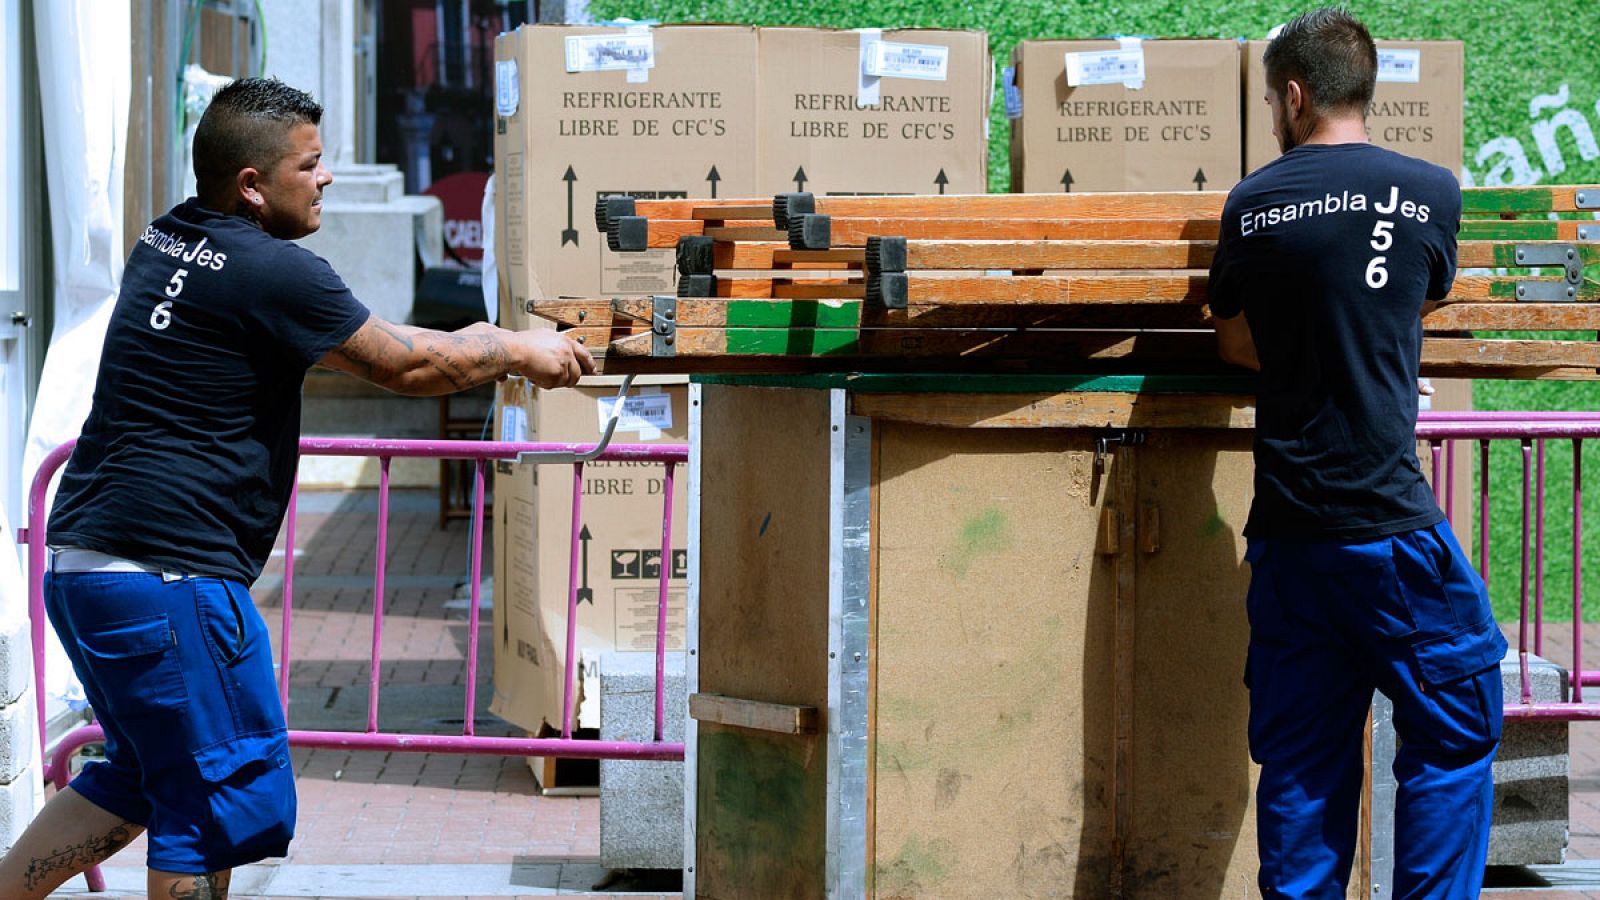 Dos operarios trabajan en una calle de Valladolid en una imagen de archivo